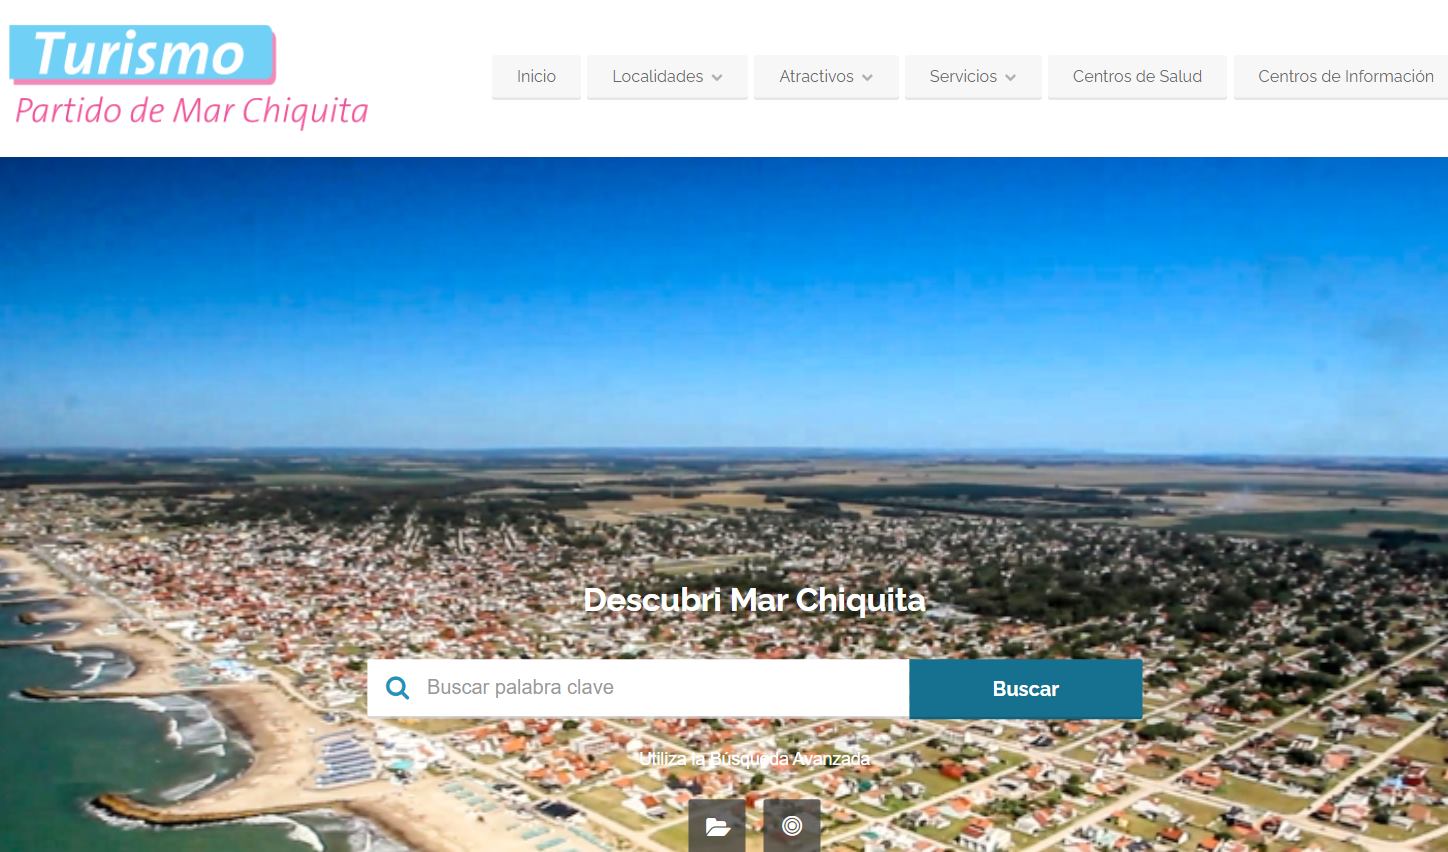 DECUBRÍ MAR CHIQUITA: La secretaría de turismo renovó su web con más servicios